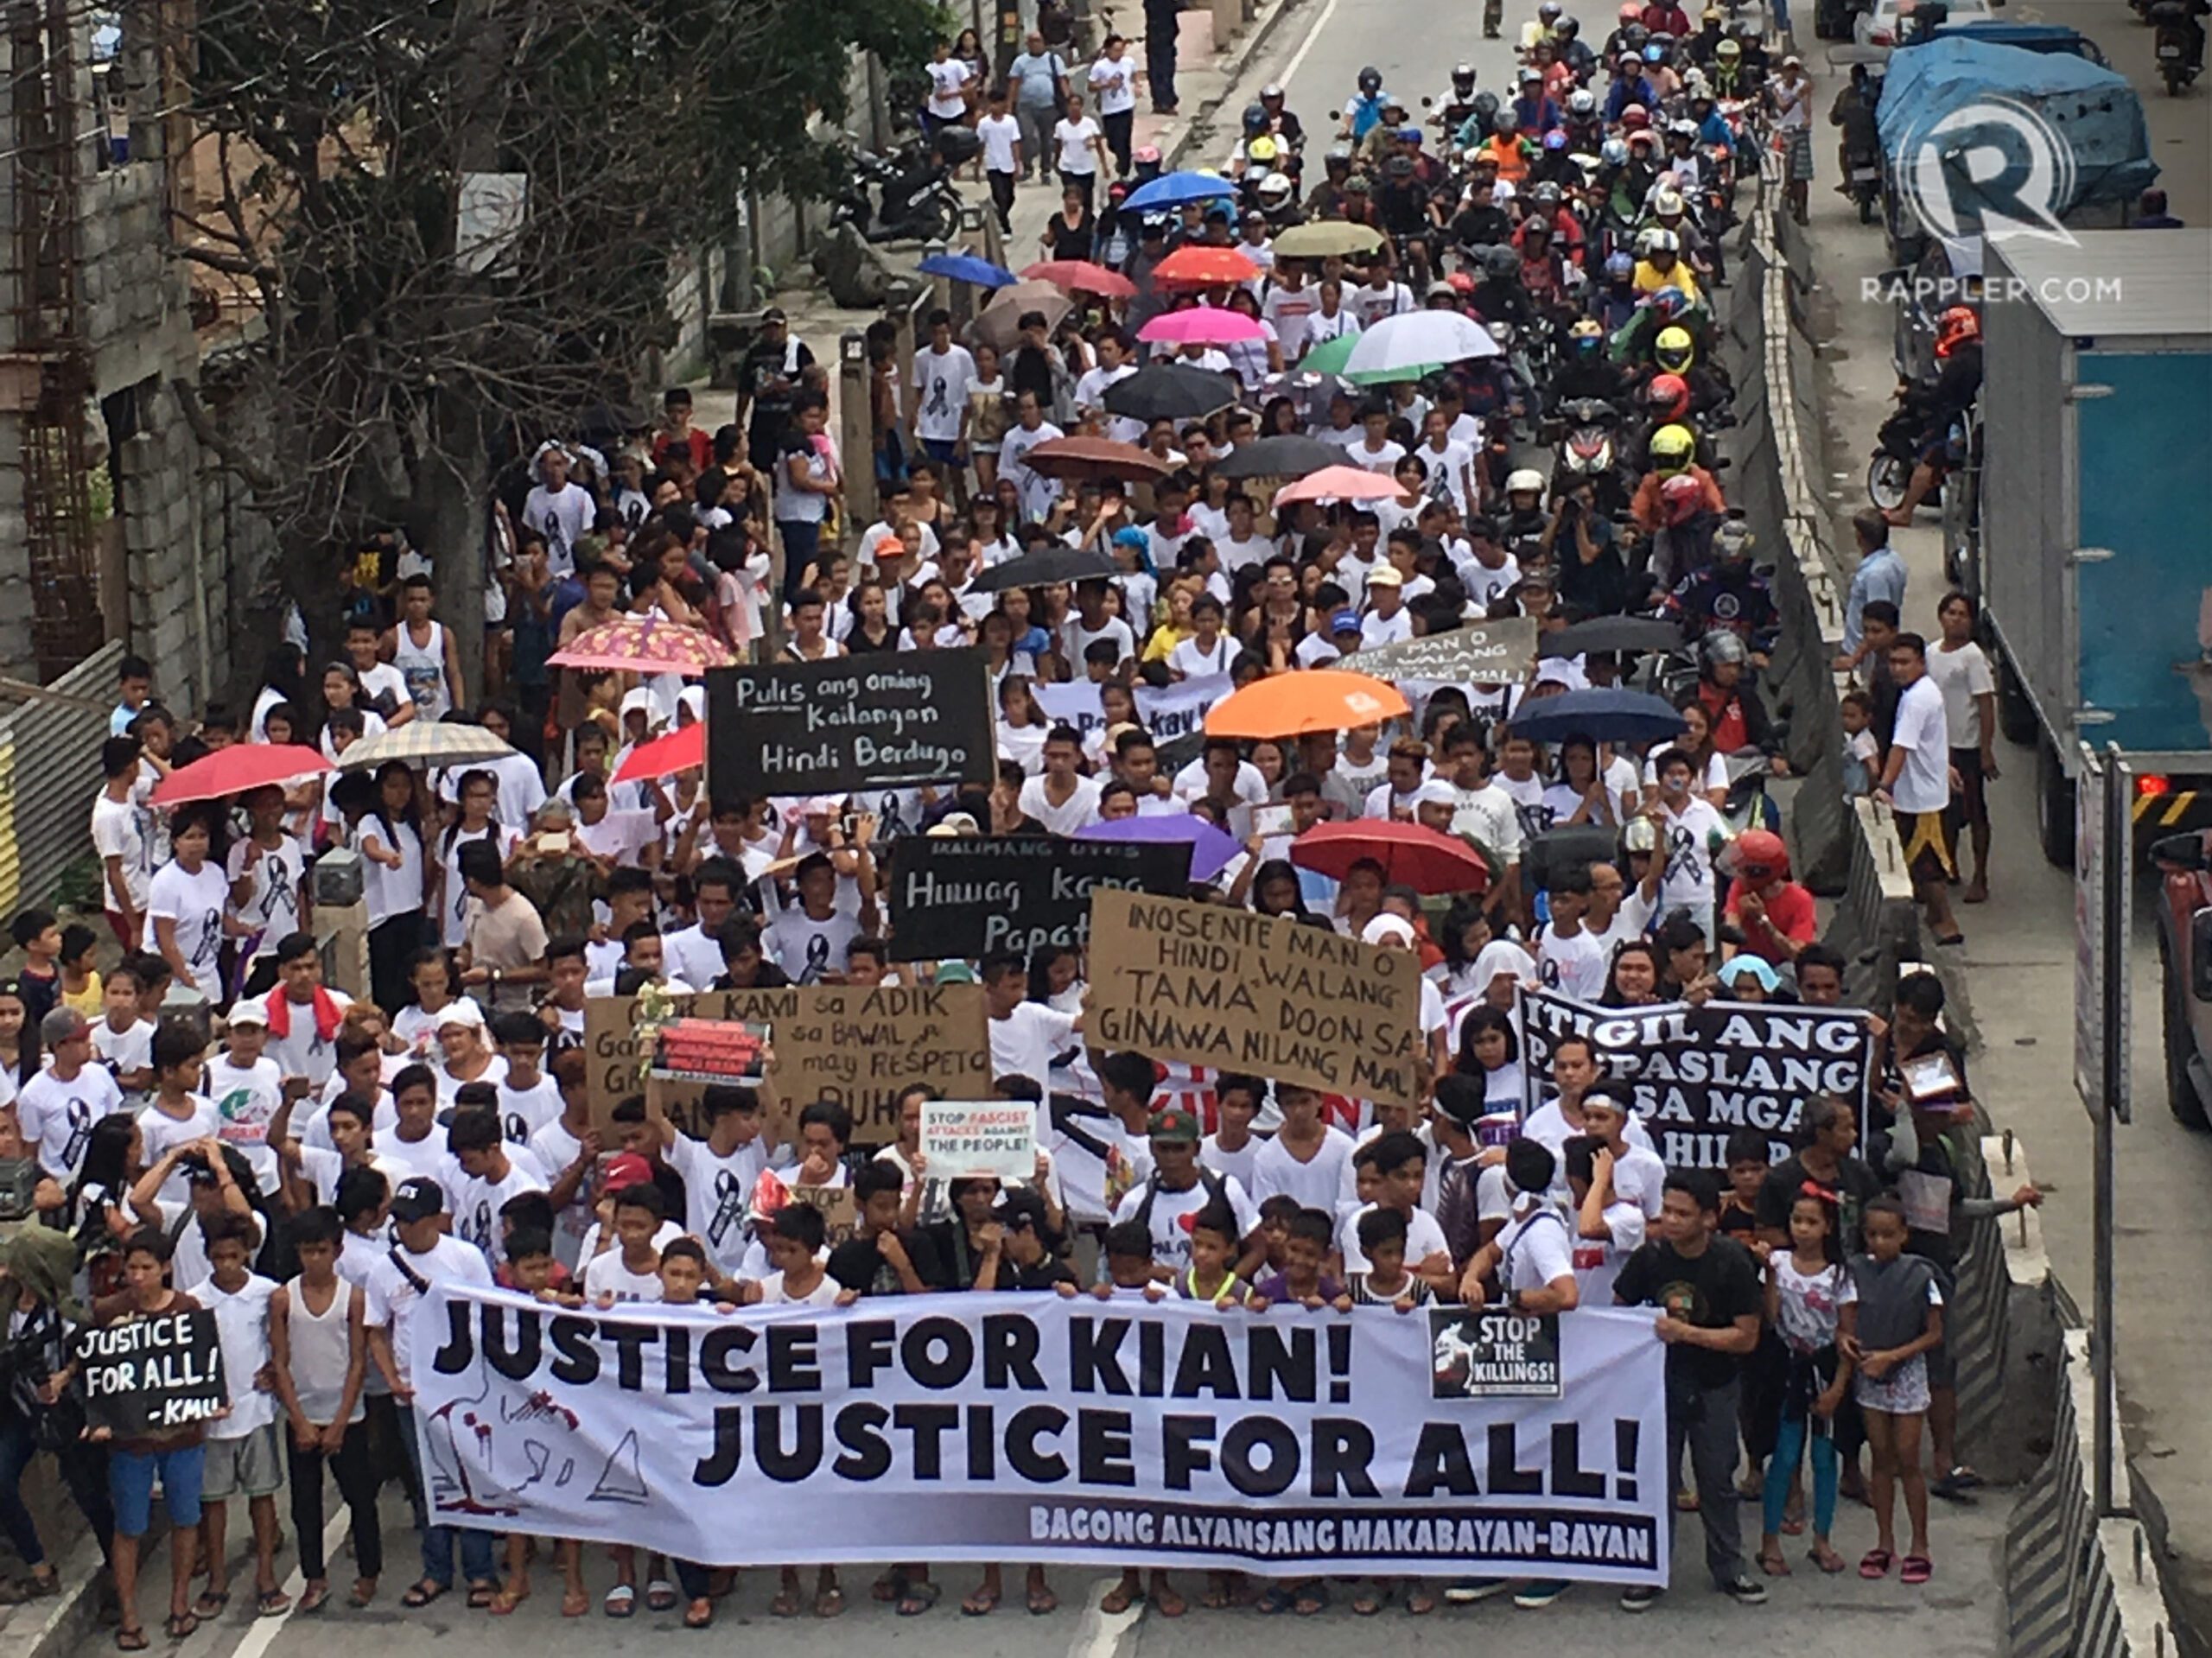 IN PHOTOS: Funeral march for Kian delos Santos